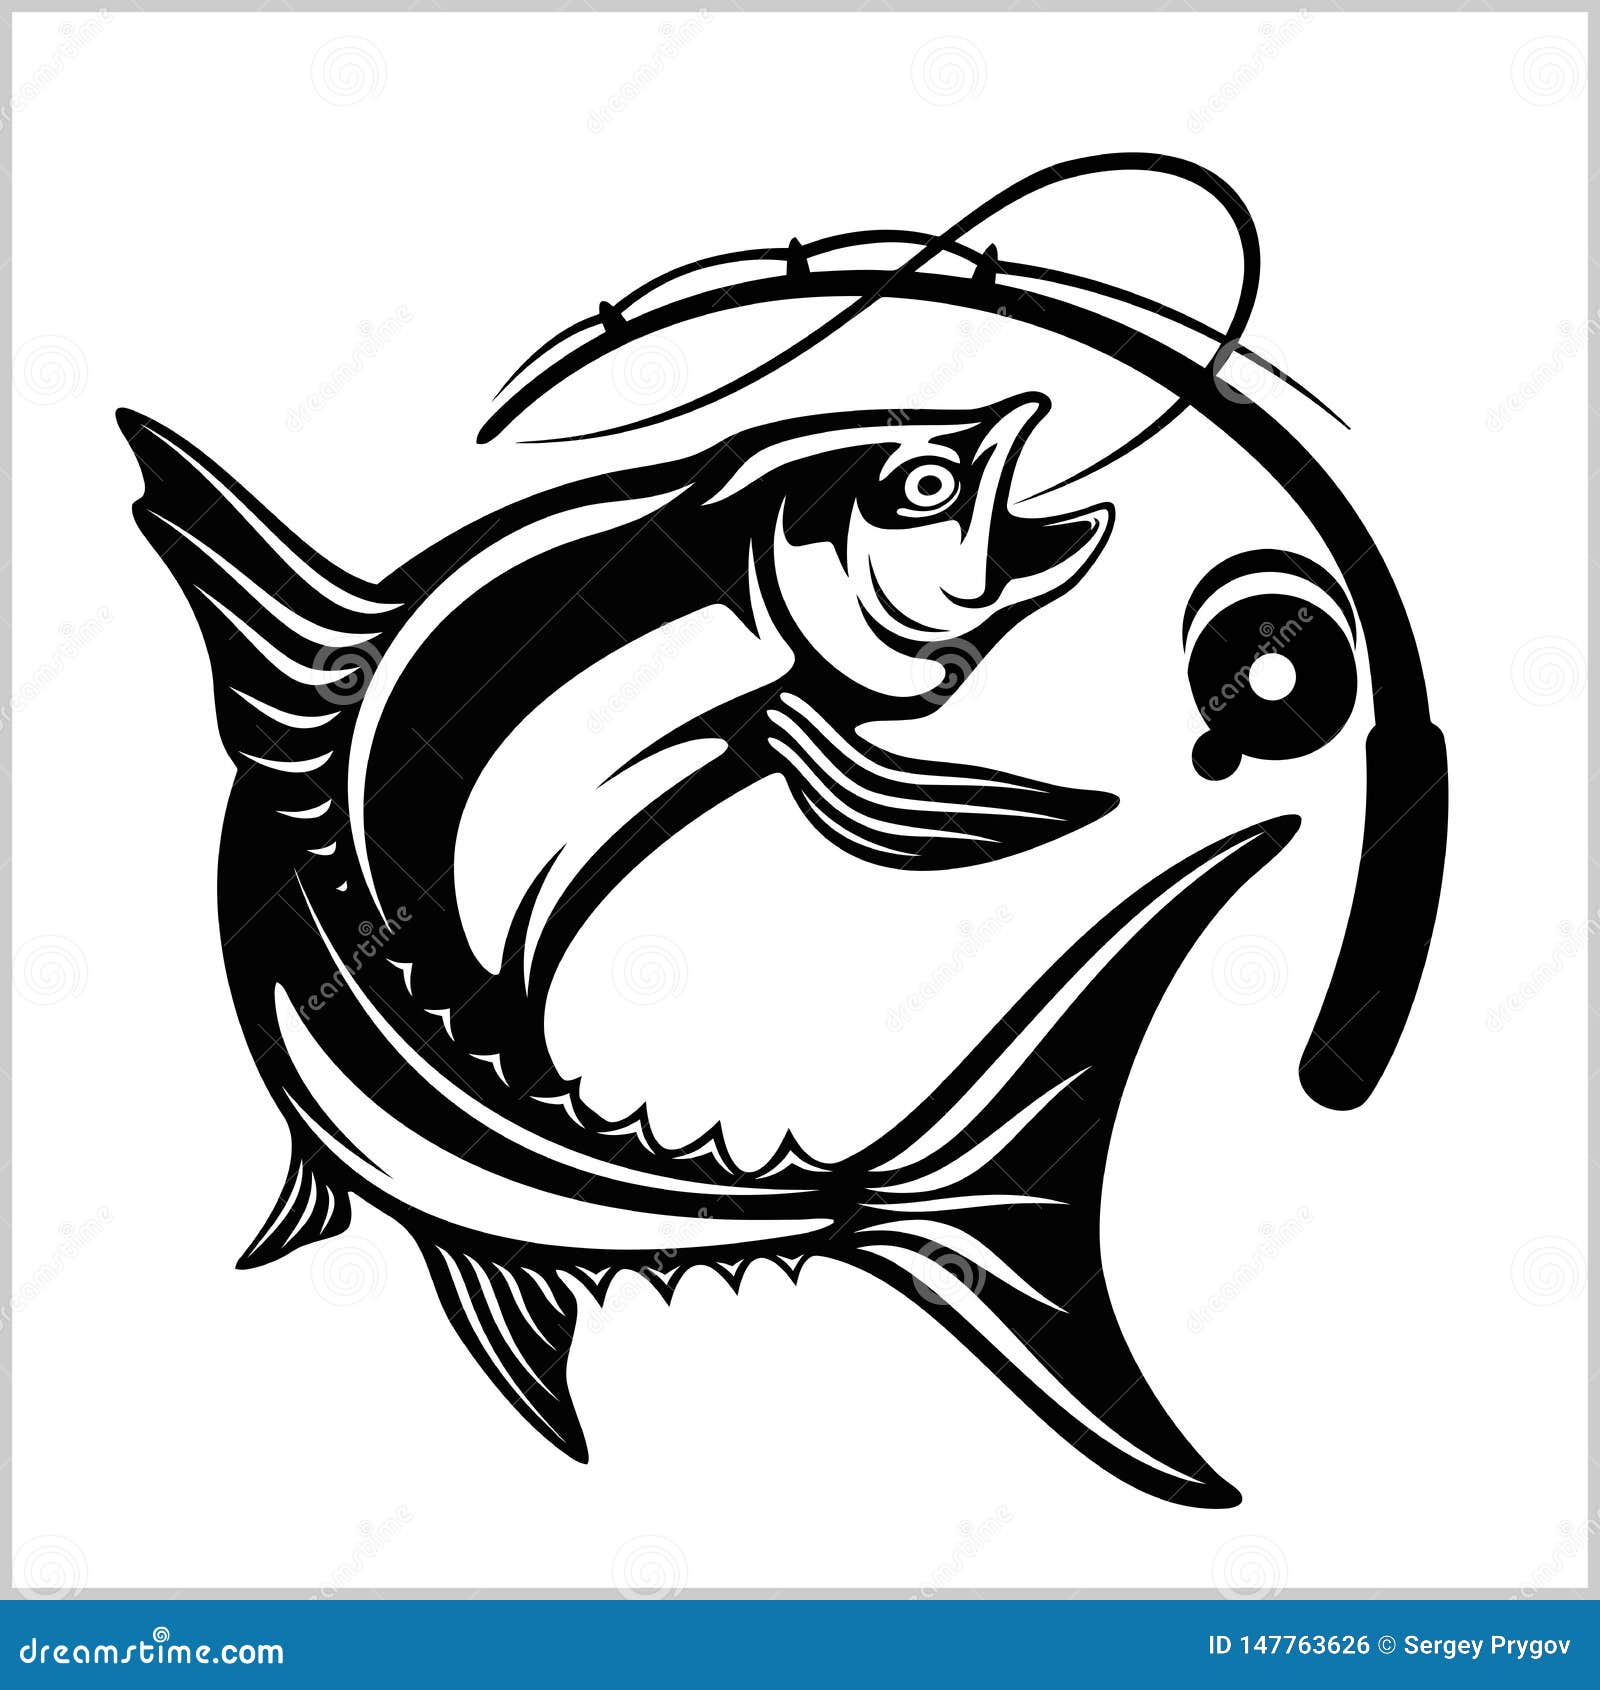 Logo Coloré Réaliste De Pêche Avec Des Poissons Appâtés Sur Le